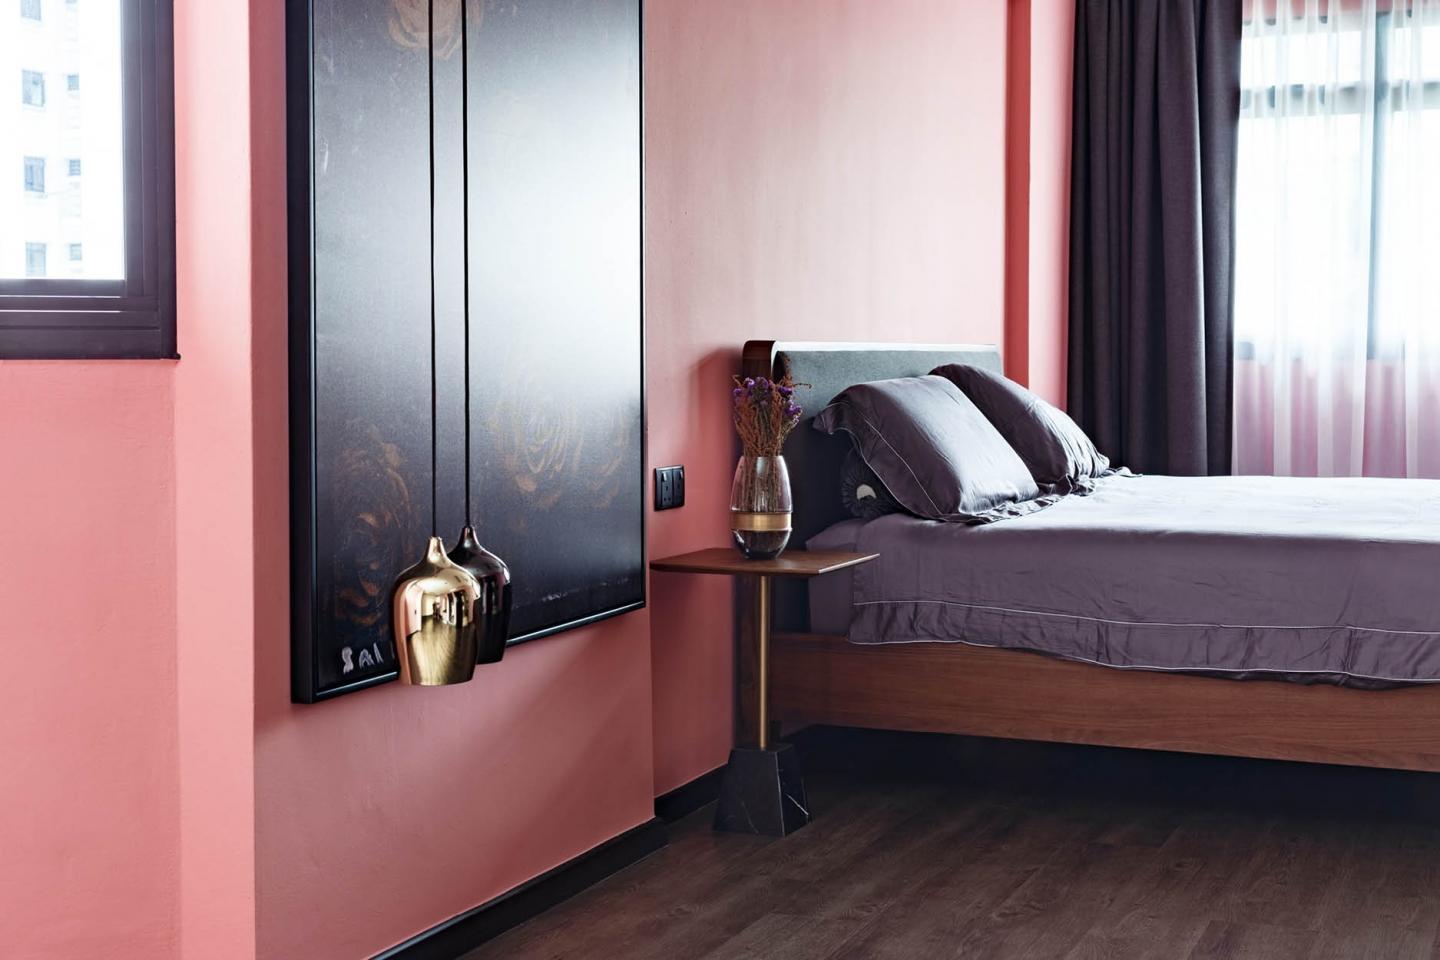 睡房以粉色和紫色作主調，再掛上同色系的藝術作品和金屬燈飾、床頭小櫃作配搭